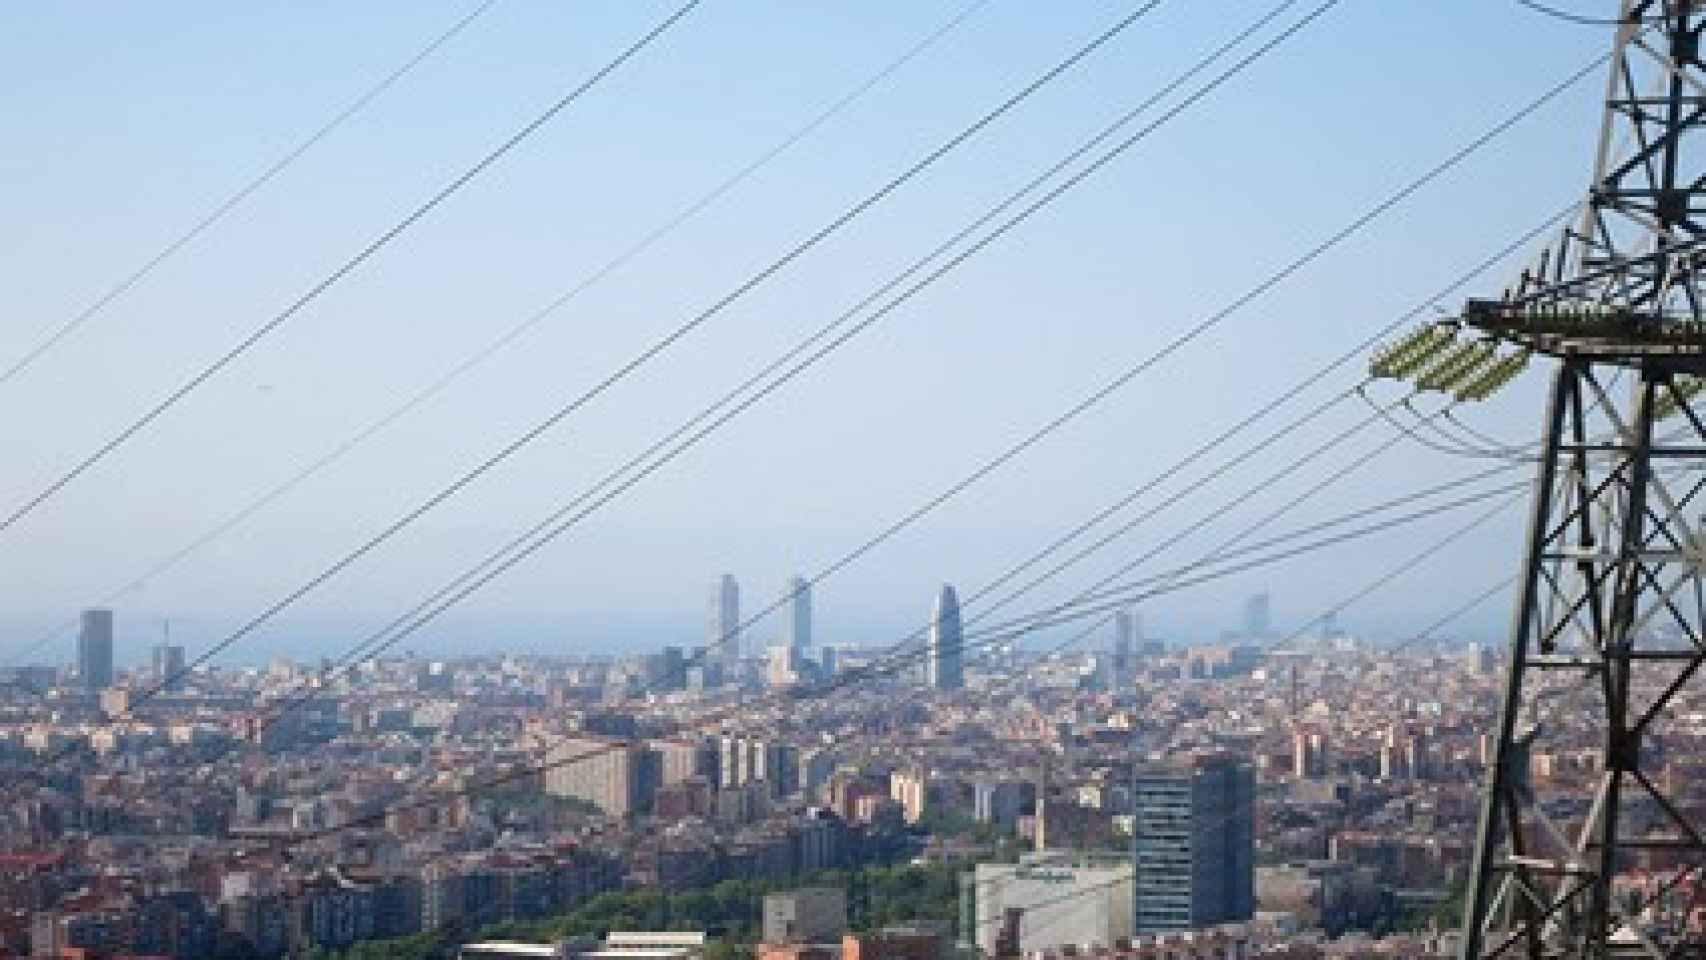 Una torre eléctrica en la ciudad de Barcelona